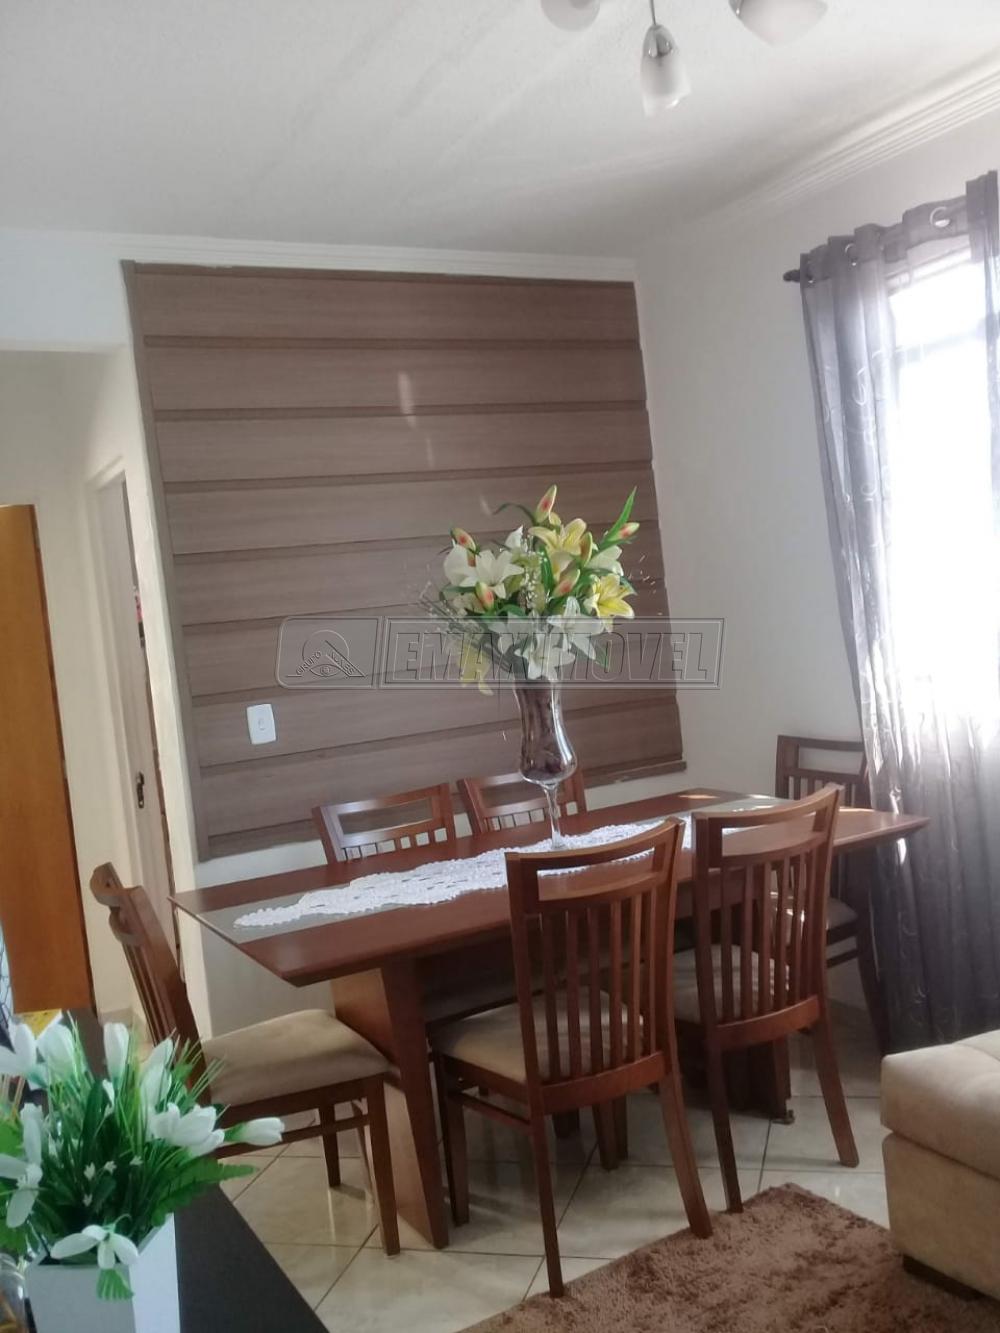 Comprar Apartamento / Padrão em Sorocaba R$ 130.000,00 - Foto 5